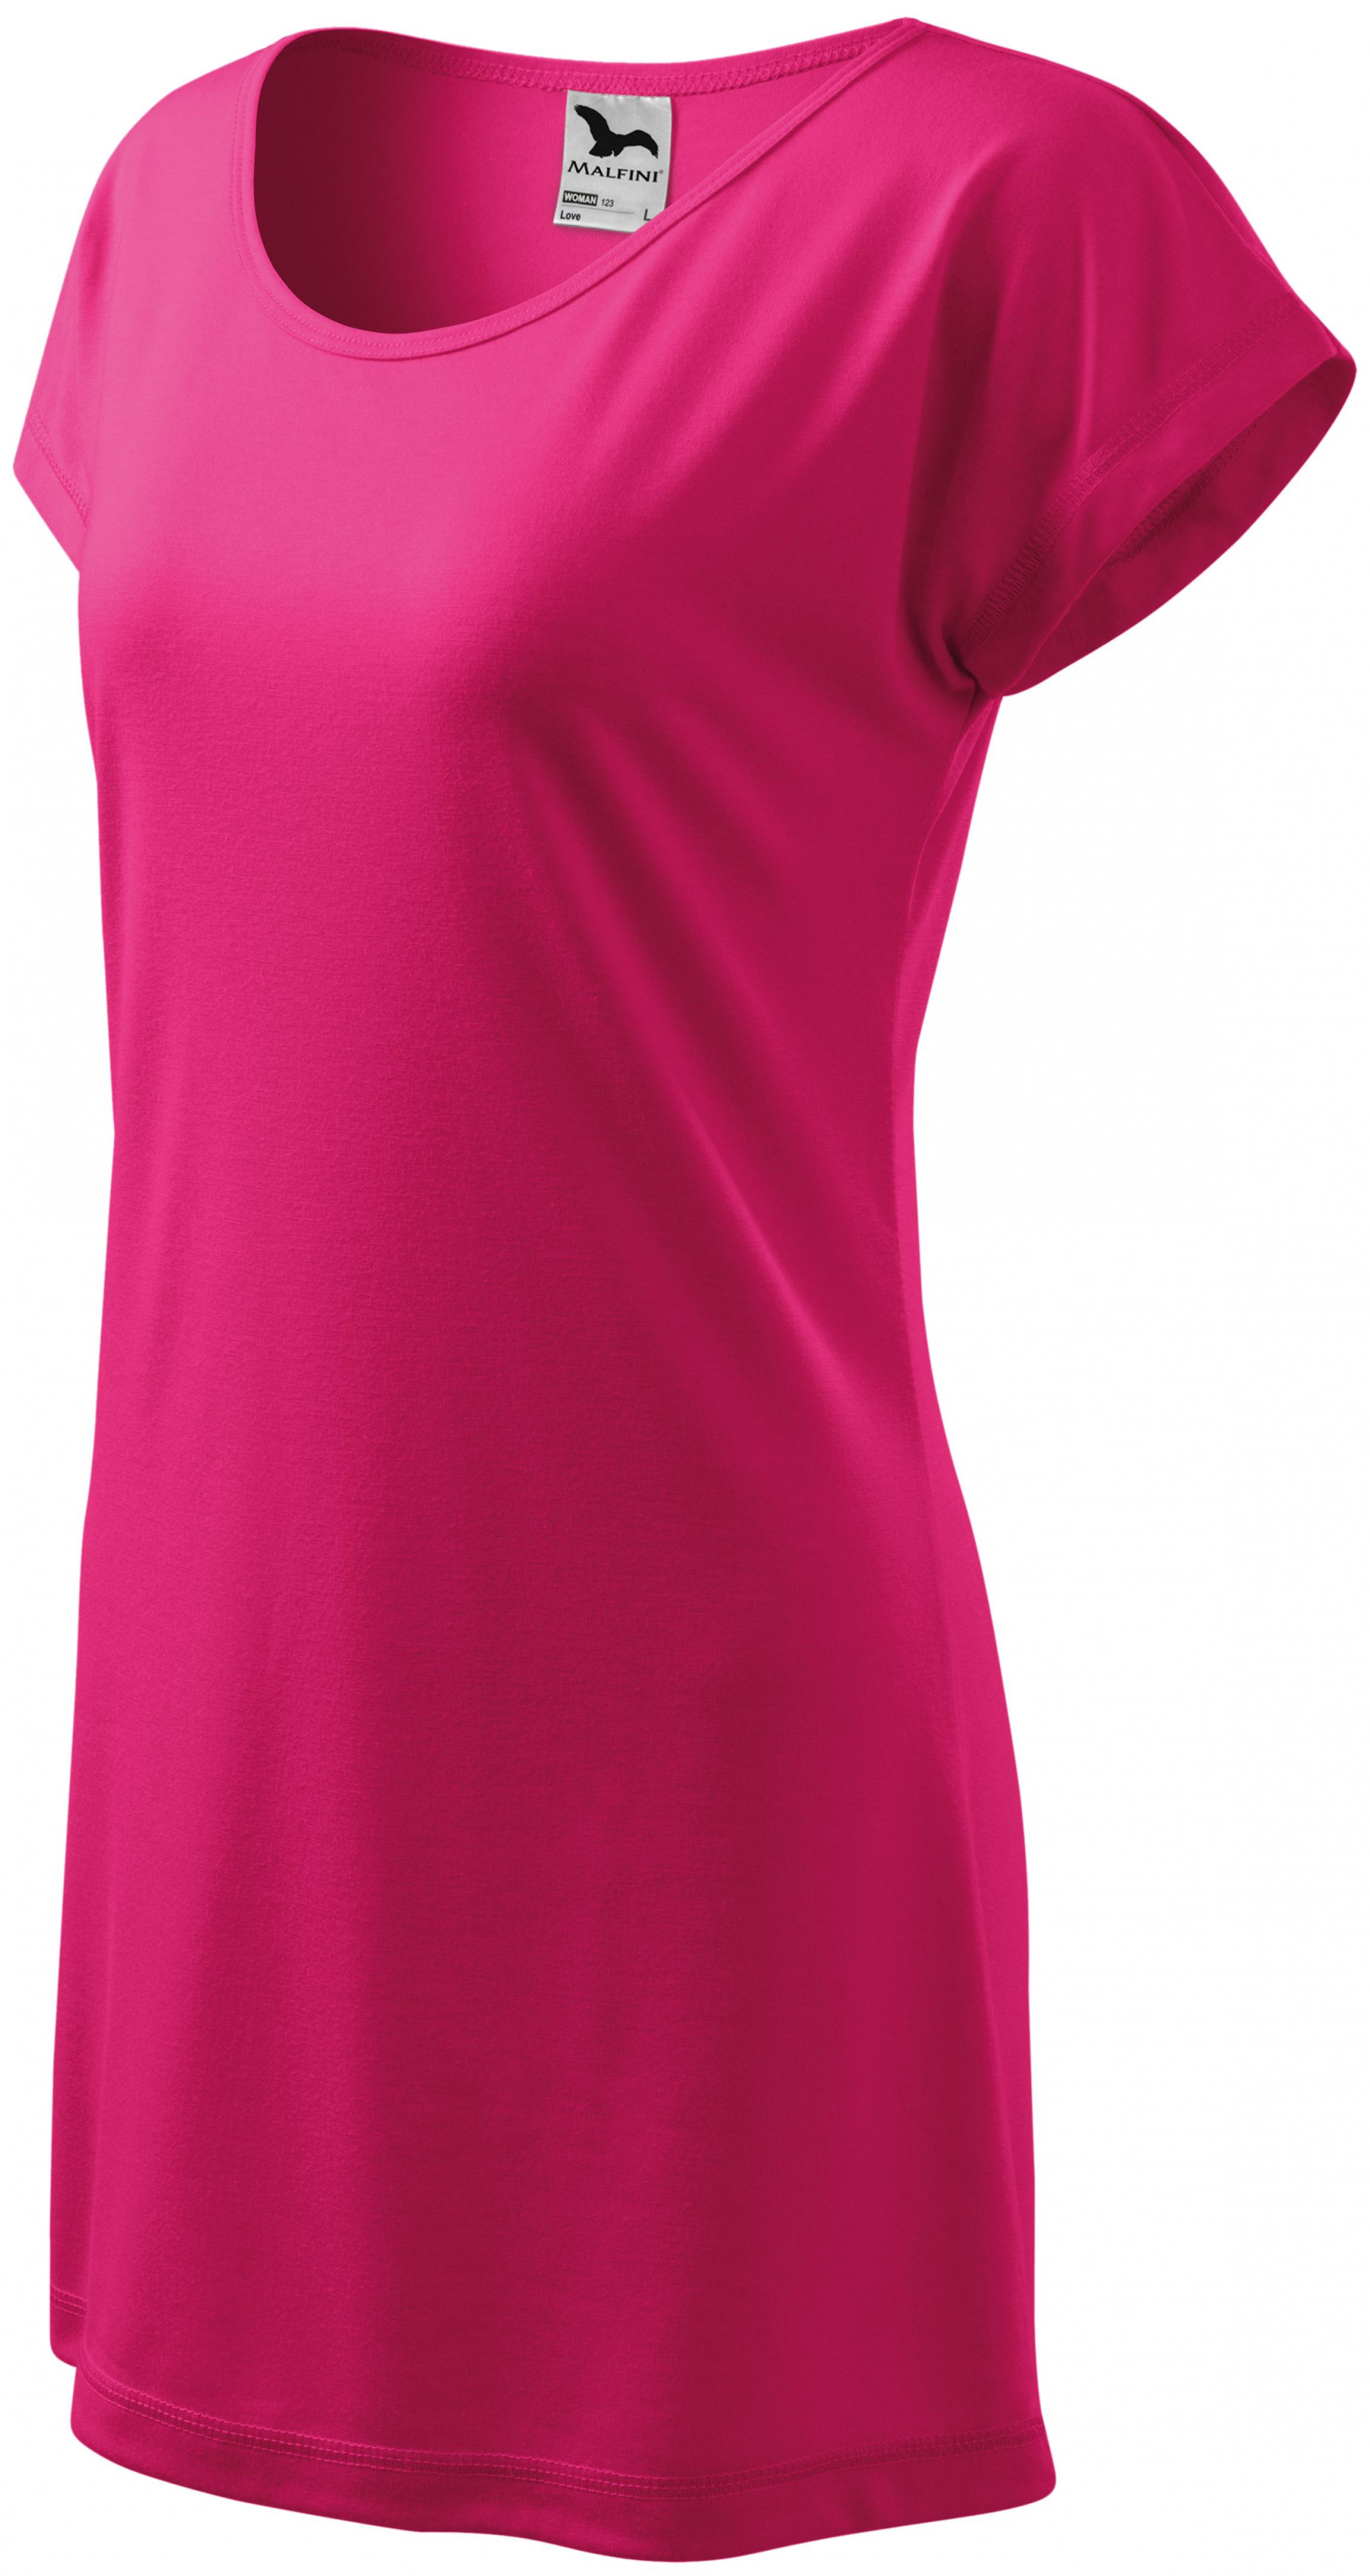 Dámske splývavé tričko/šaty, purpurová, 2XL